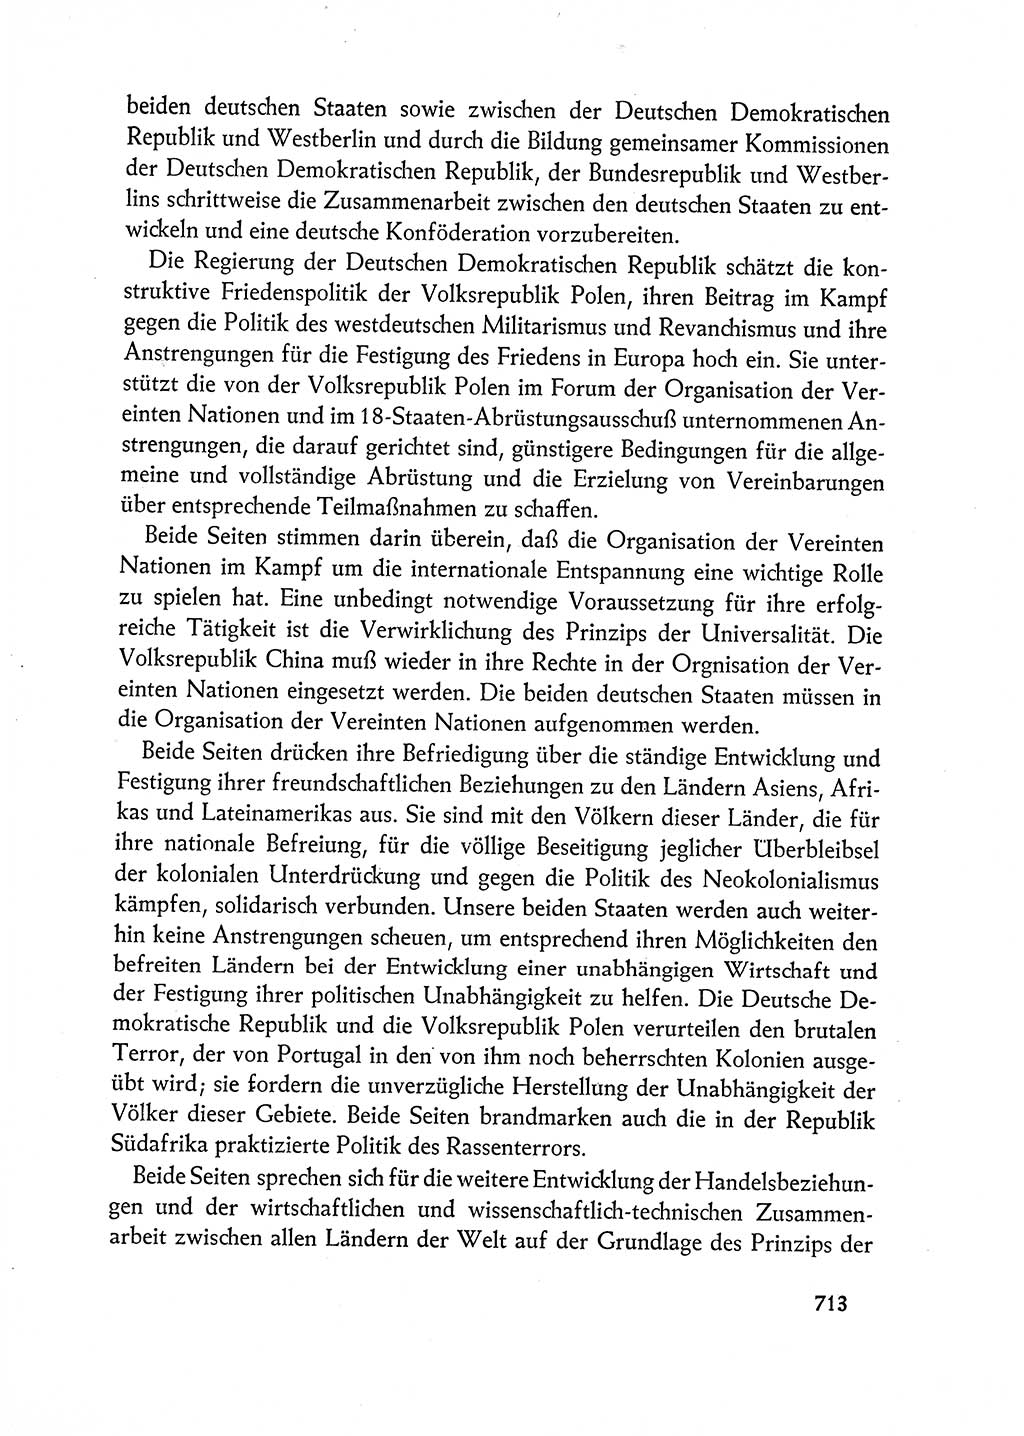 Dokumente der Sozialistischen Einheitspartei Deutschlands (SED) [Deutsche Demokratische Republik (DDR)] 1962-1963, Seite 713 (Dok. SED DDR 1962-1963, S. 713)